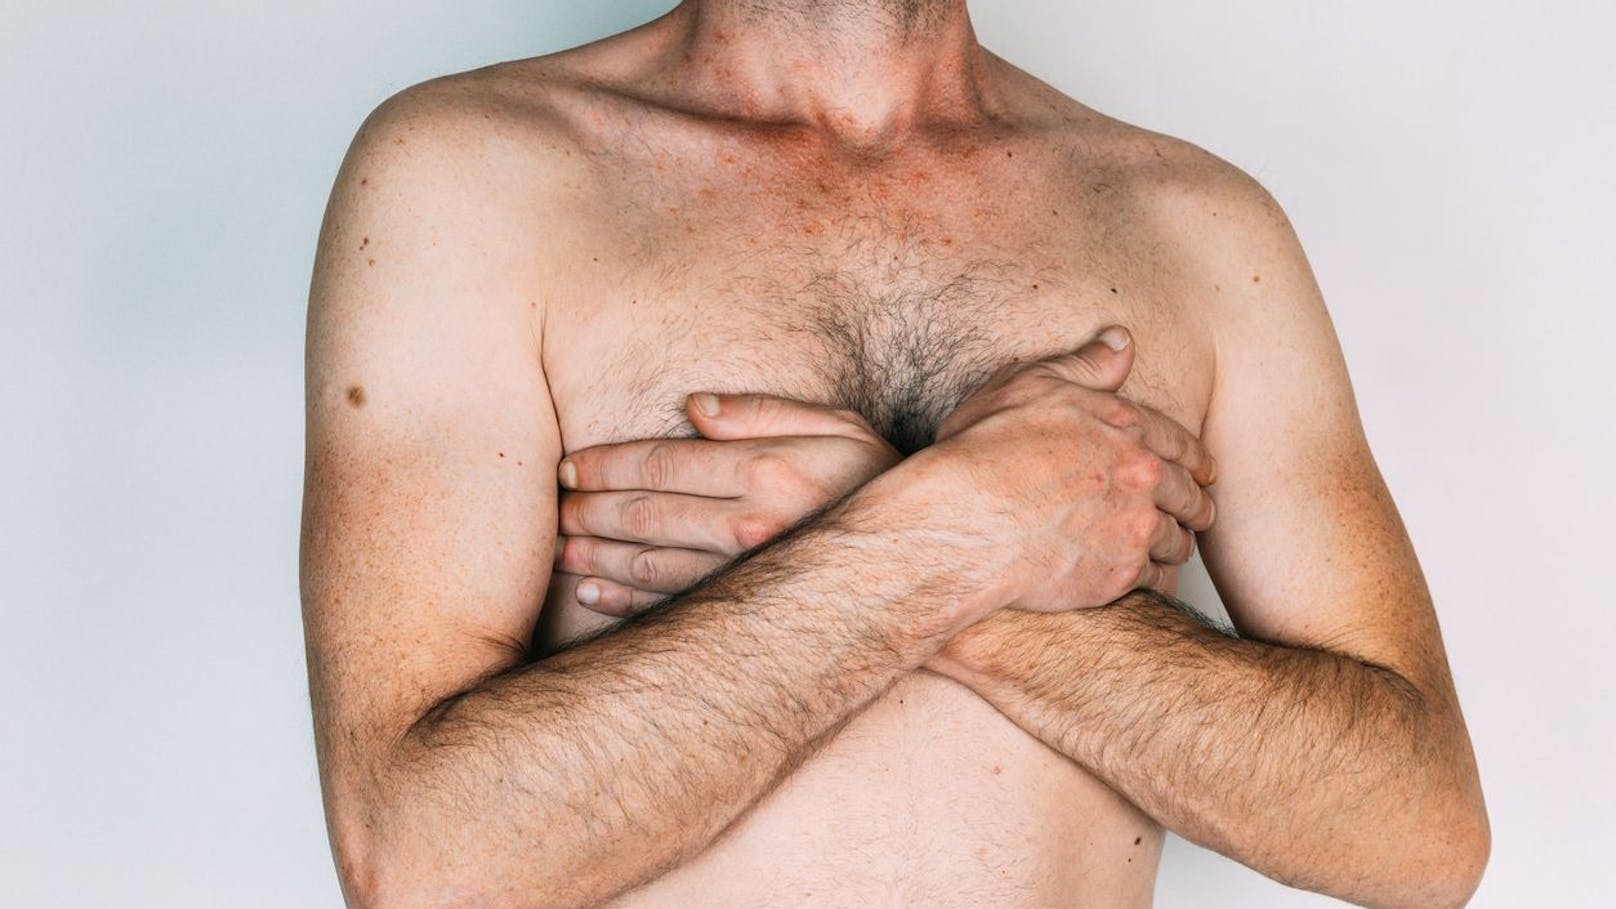 Männer mit "Brüsten" haben höheres Sterberisiko vor 75